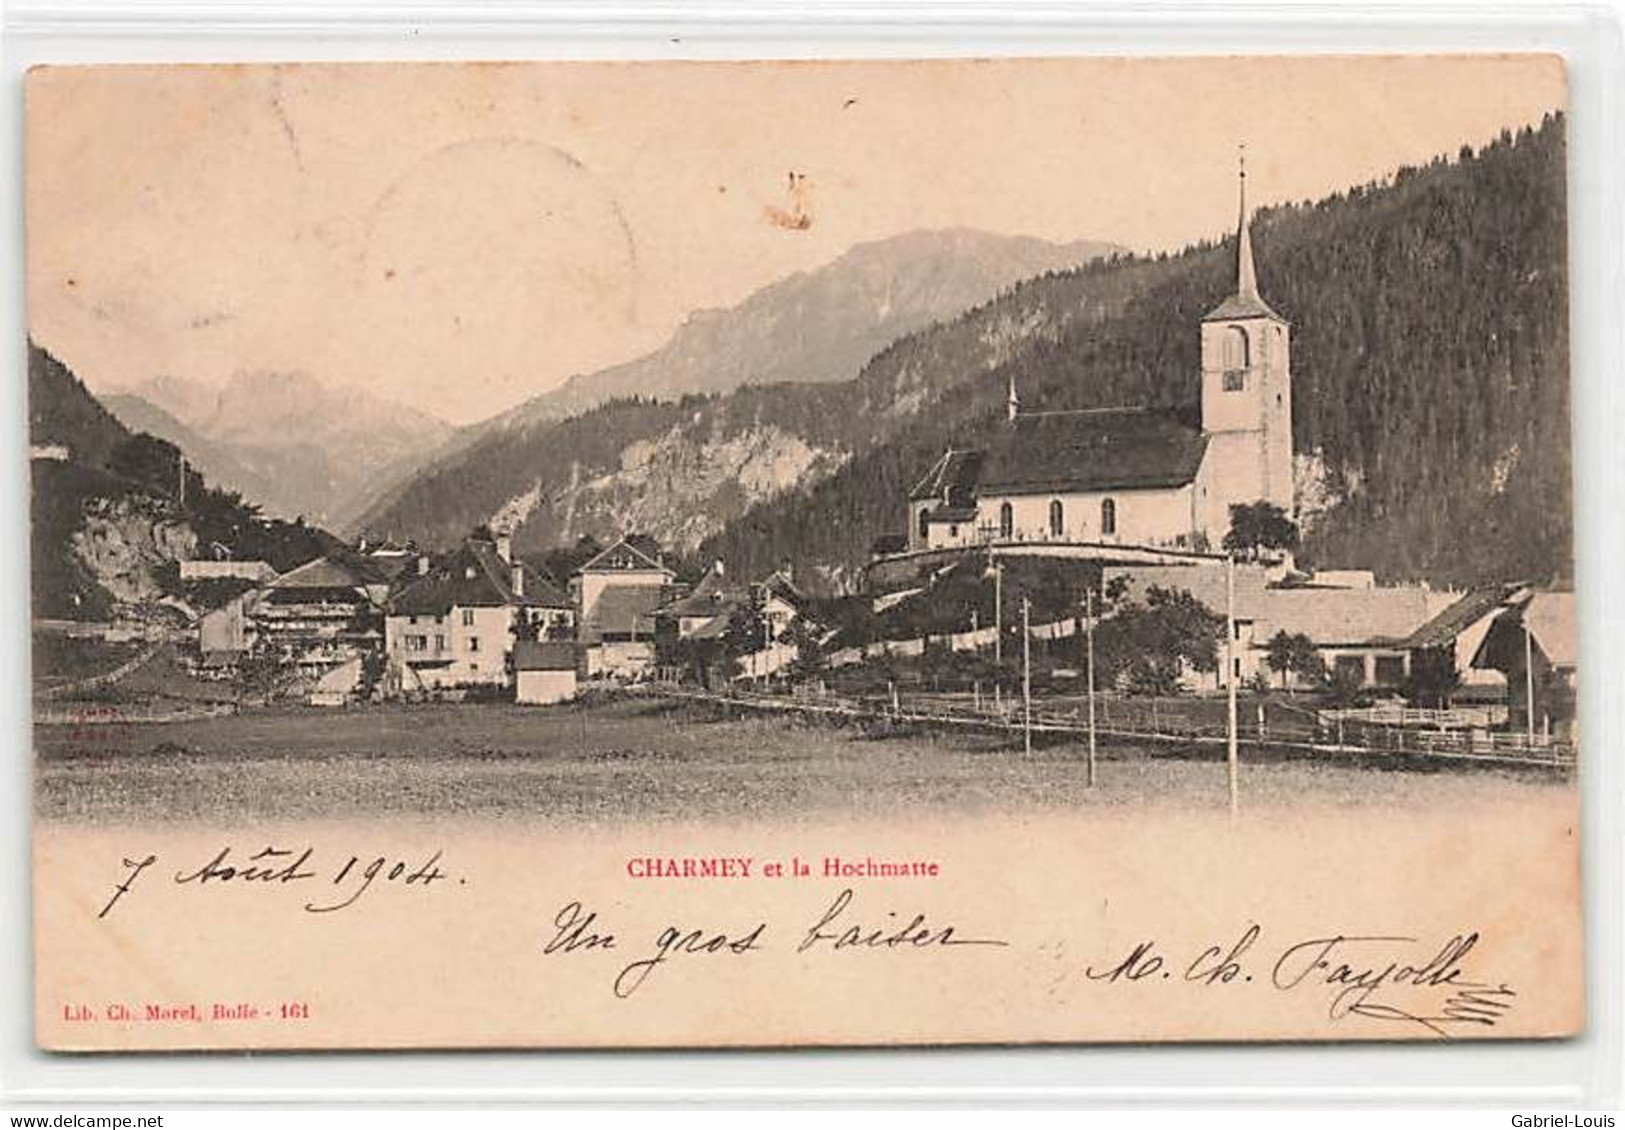 Charmey Et La Hochmatte Morel 161 1904 Eglise Cachet Gruyère - Charmey